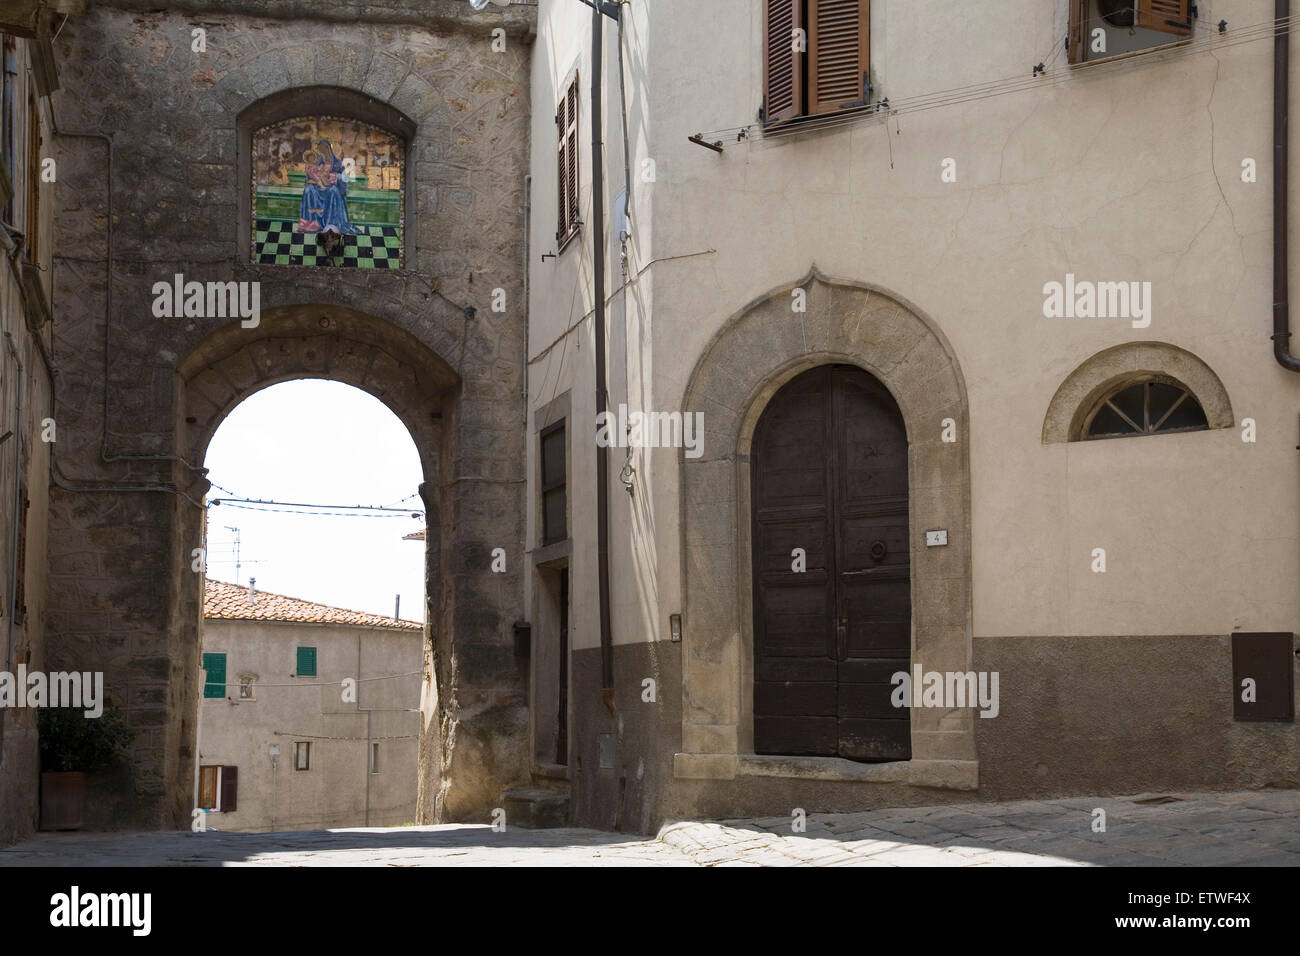 europe, italy, tuscany, roccastrada Stock Photo